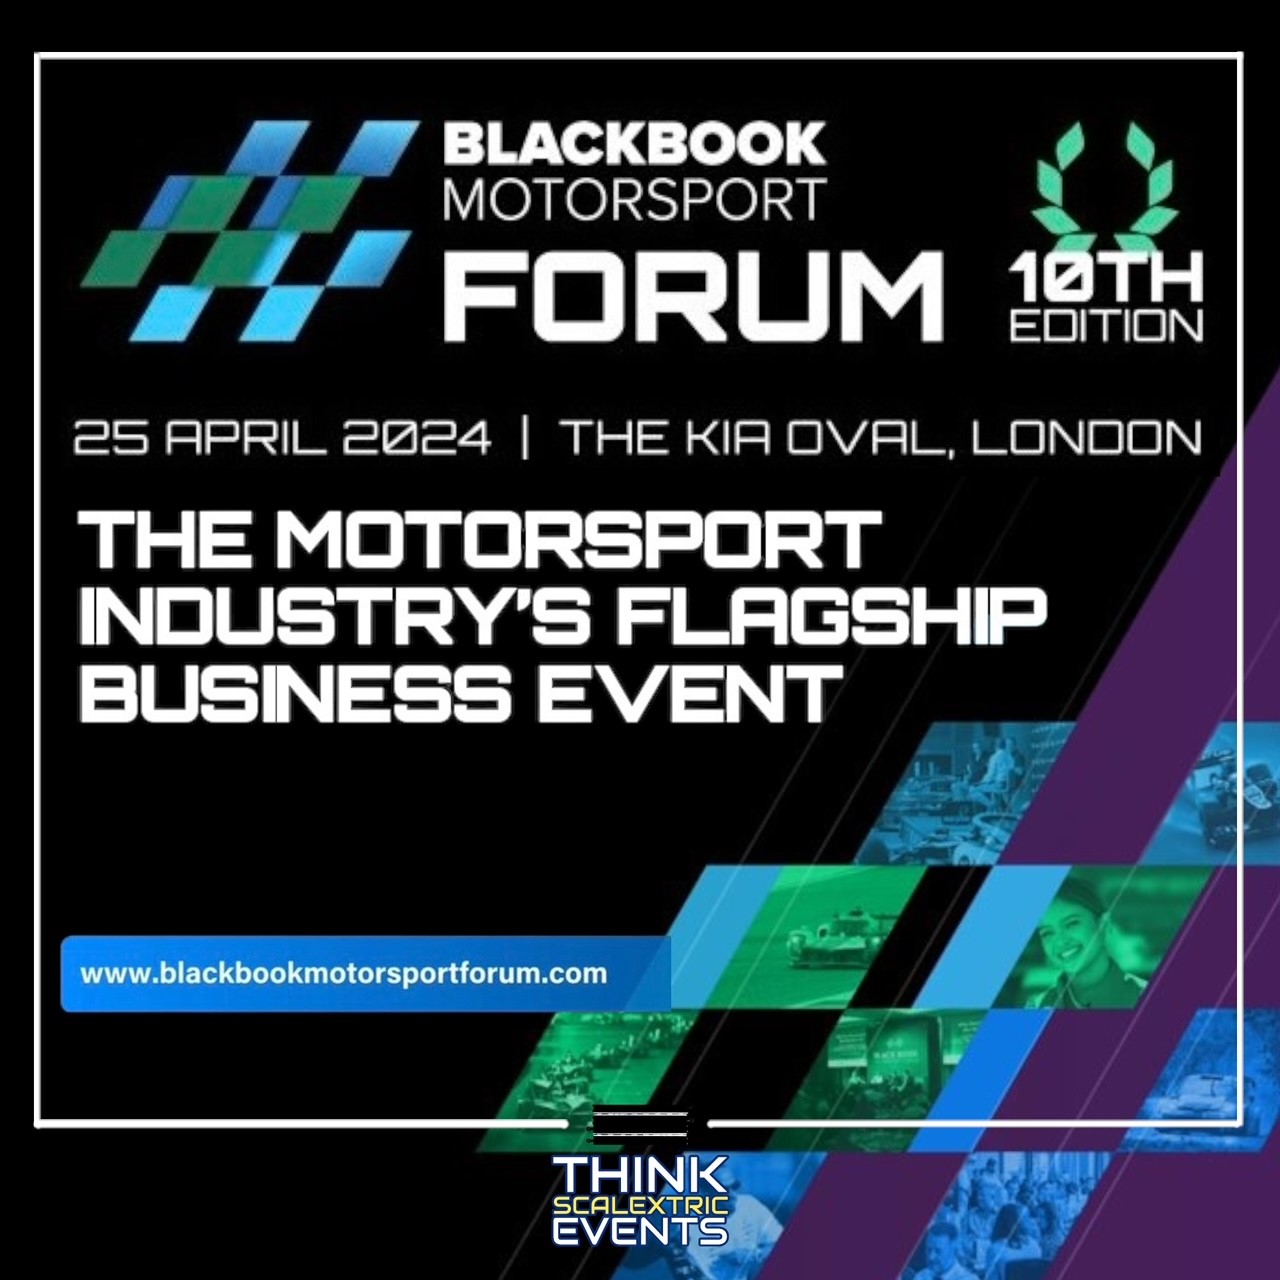 BlackBook Motorsport Forum